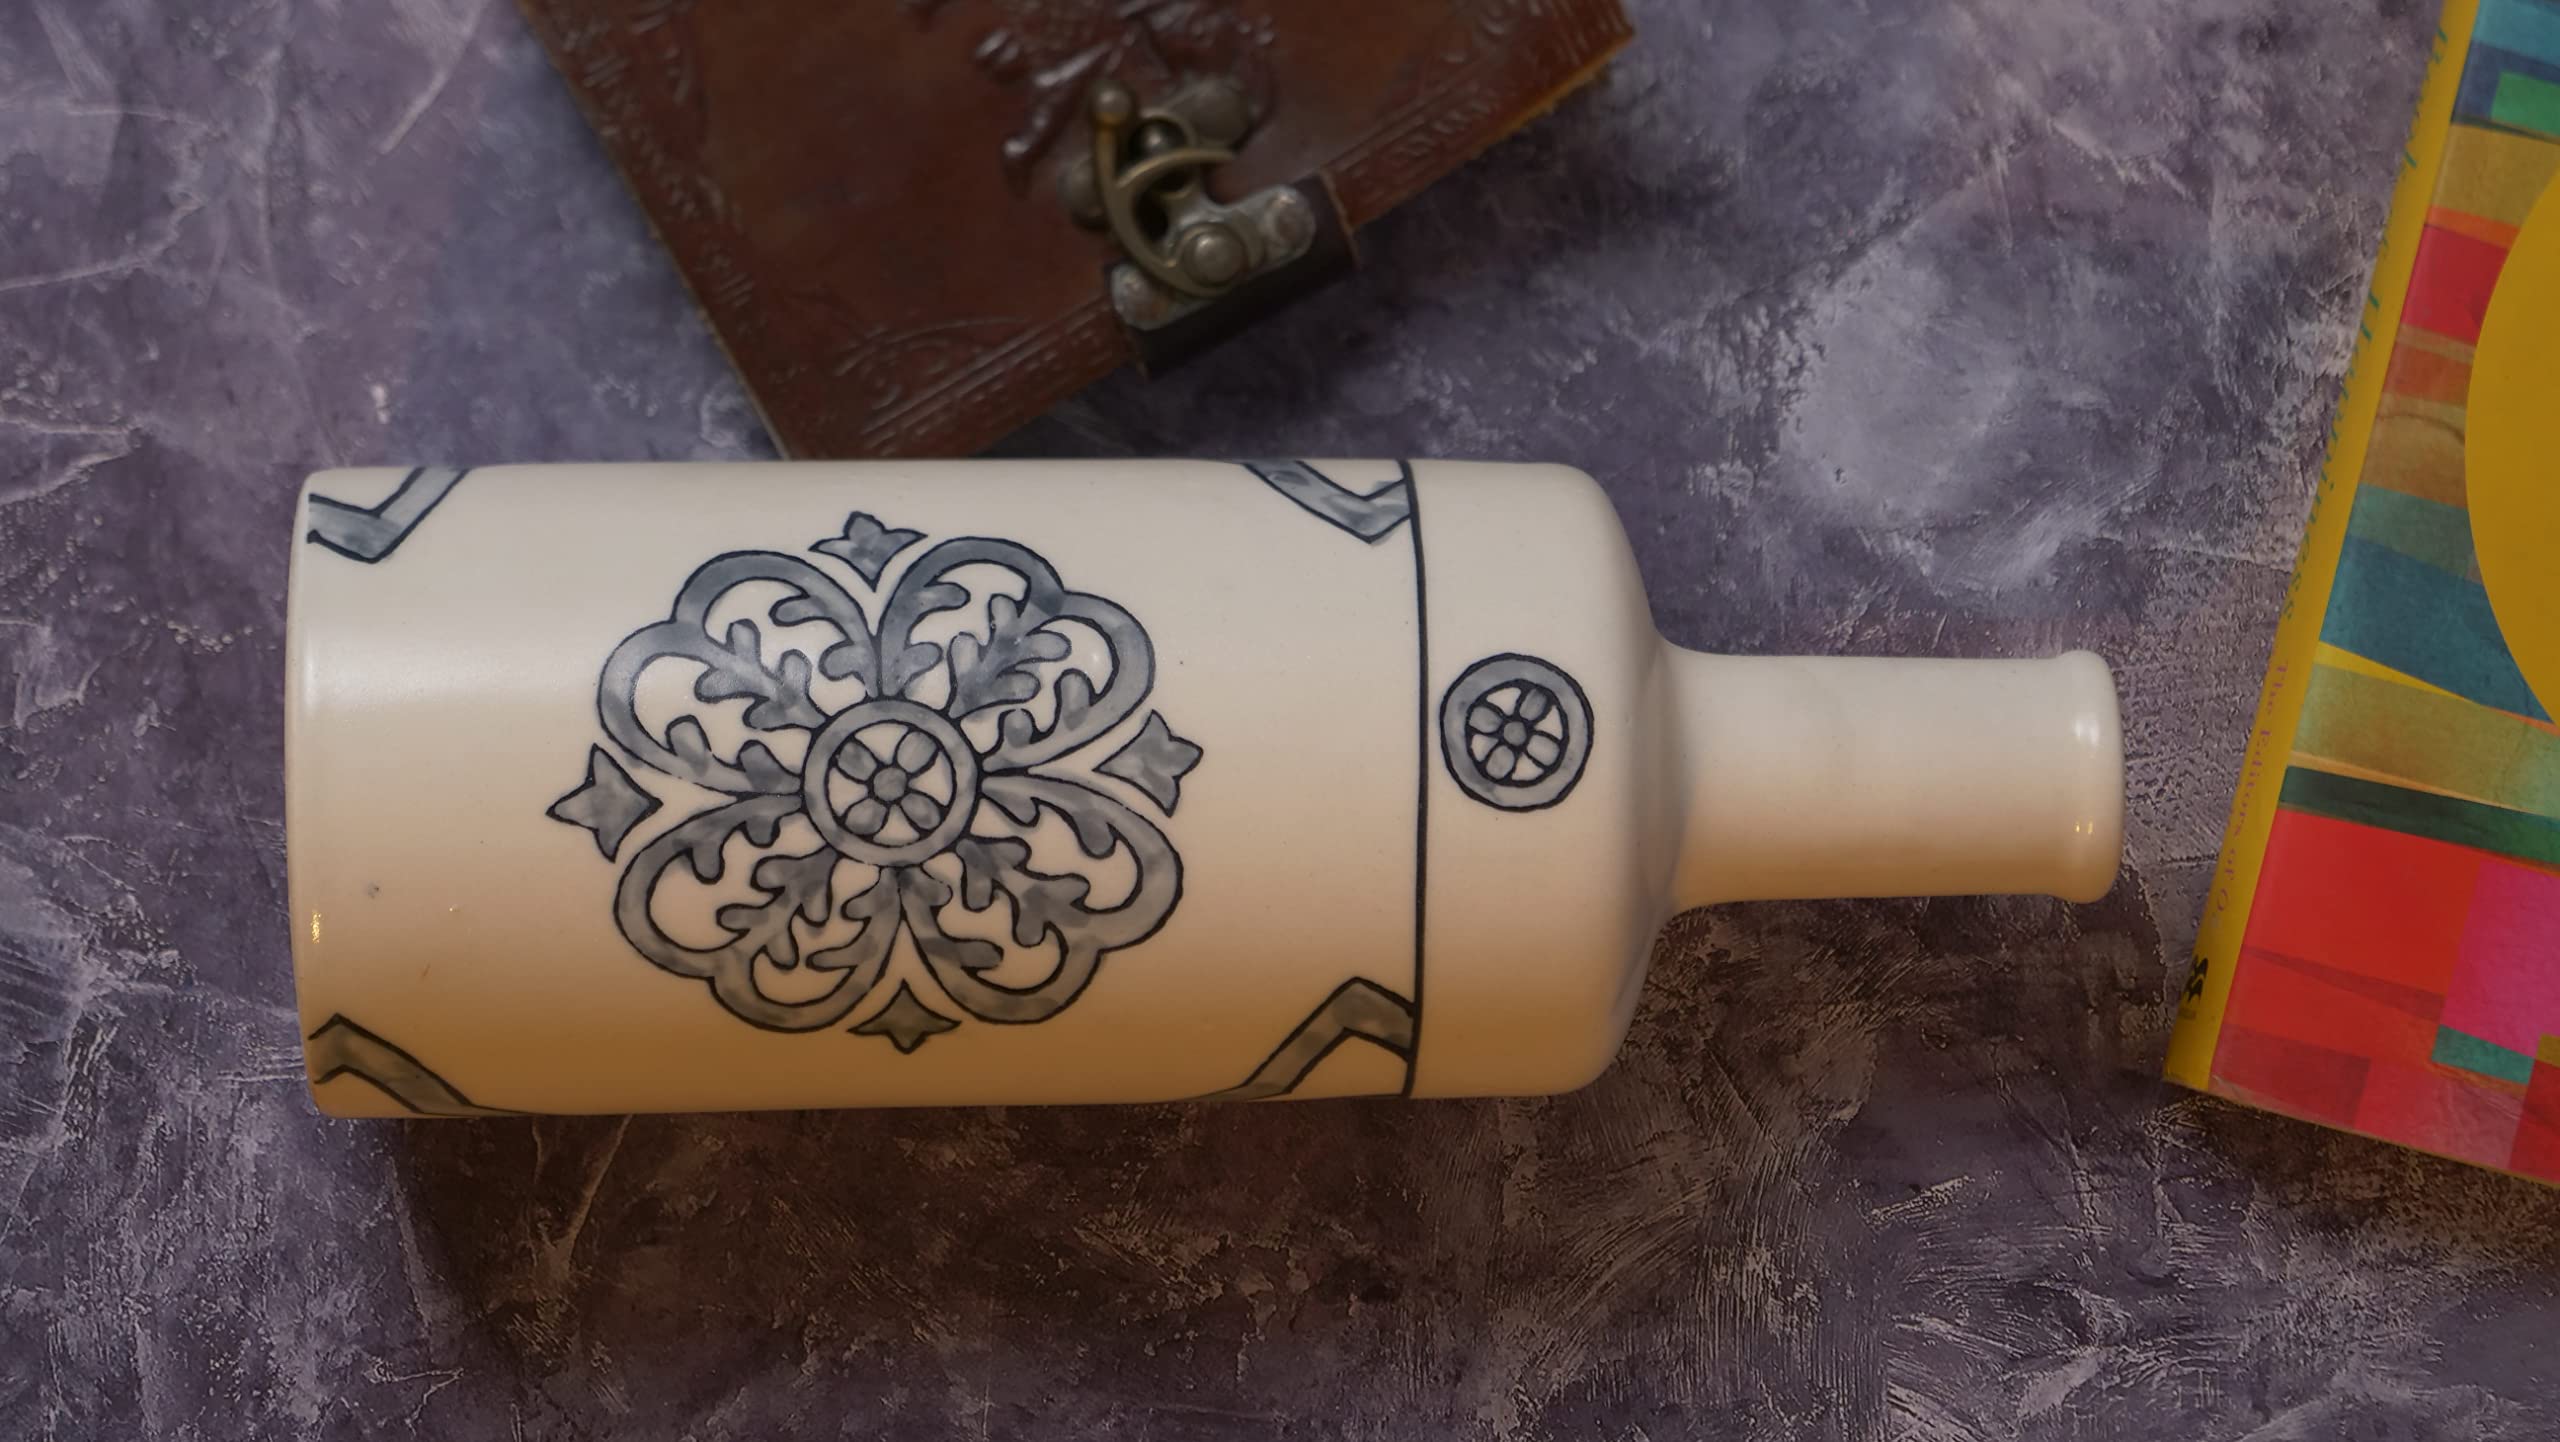 Handcrafted Bottle Shaped Ceramic Flower vase